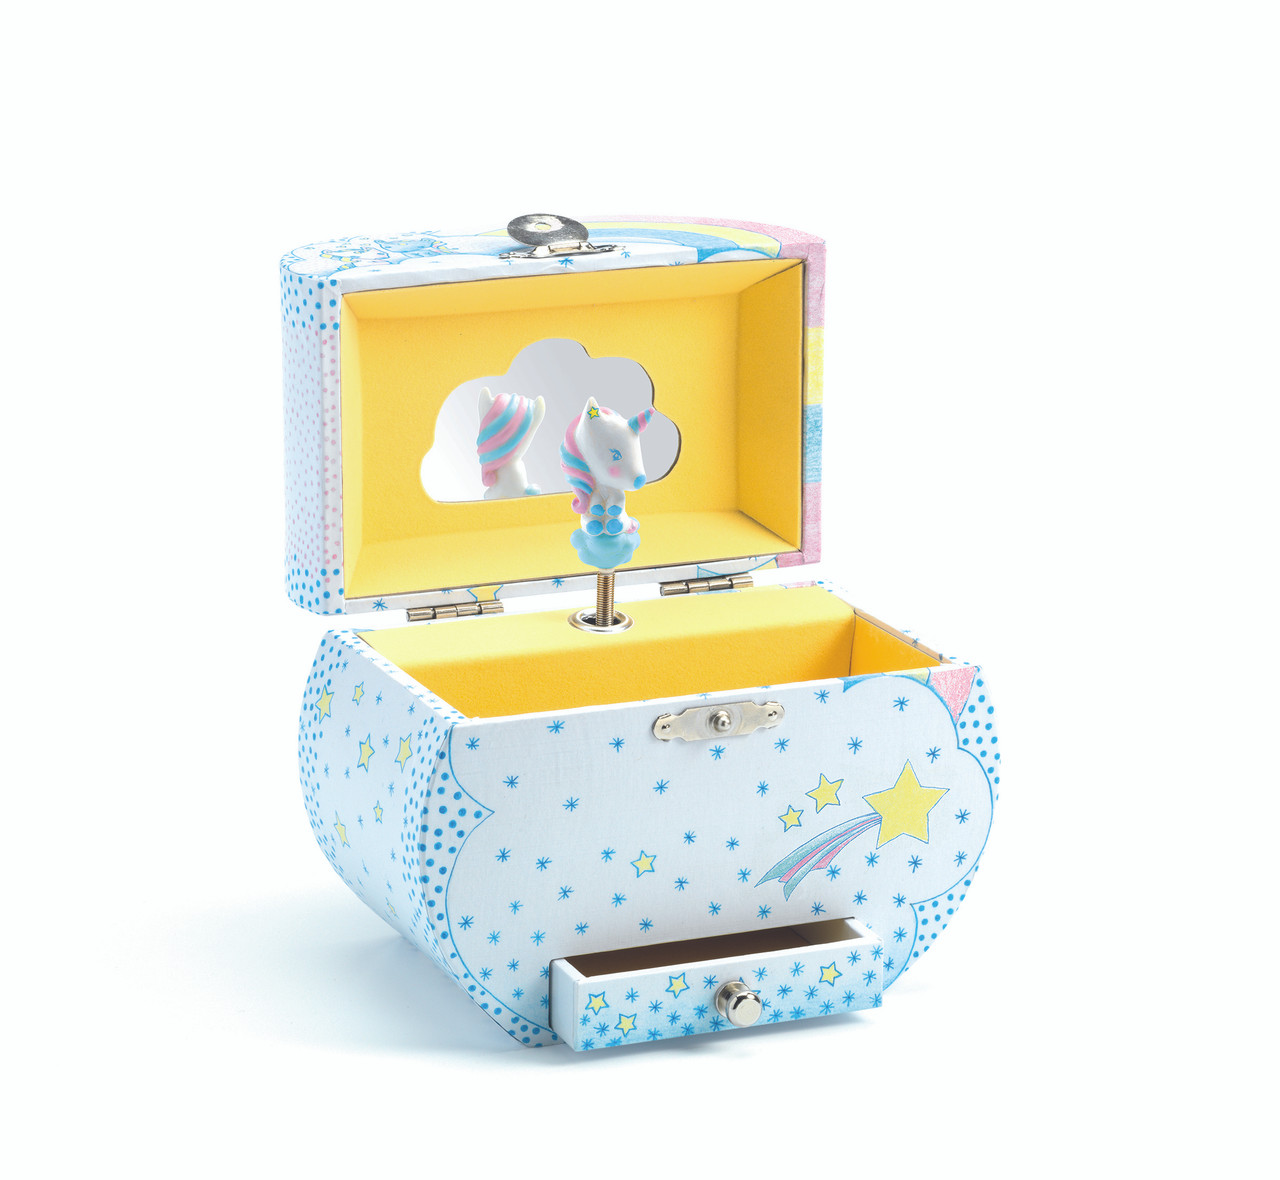 Unicorn Dreams Treasure Box